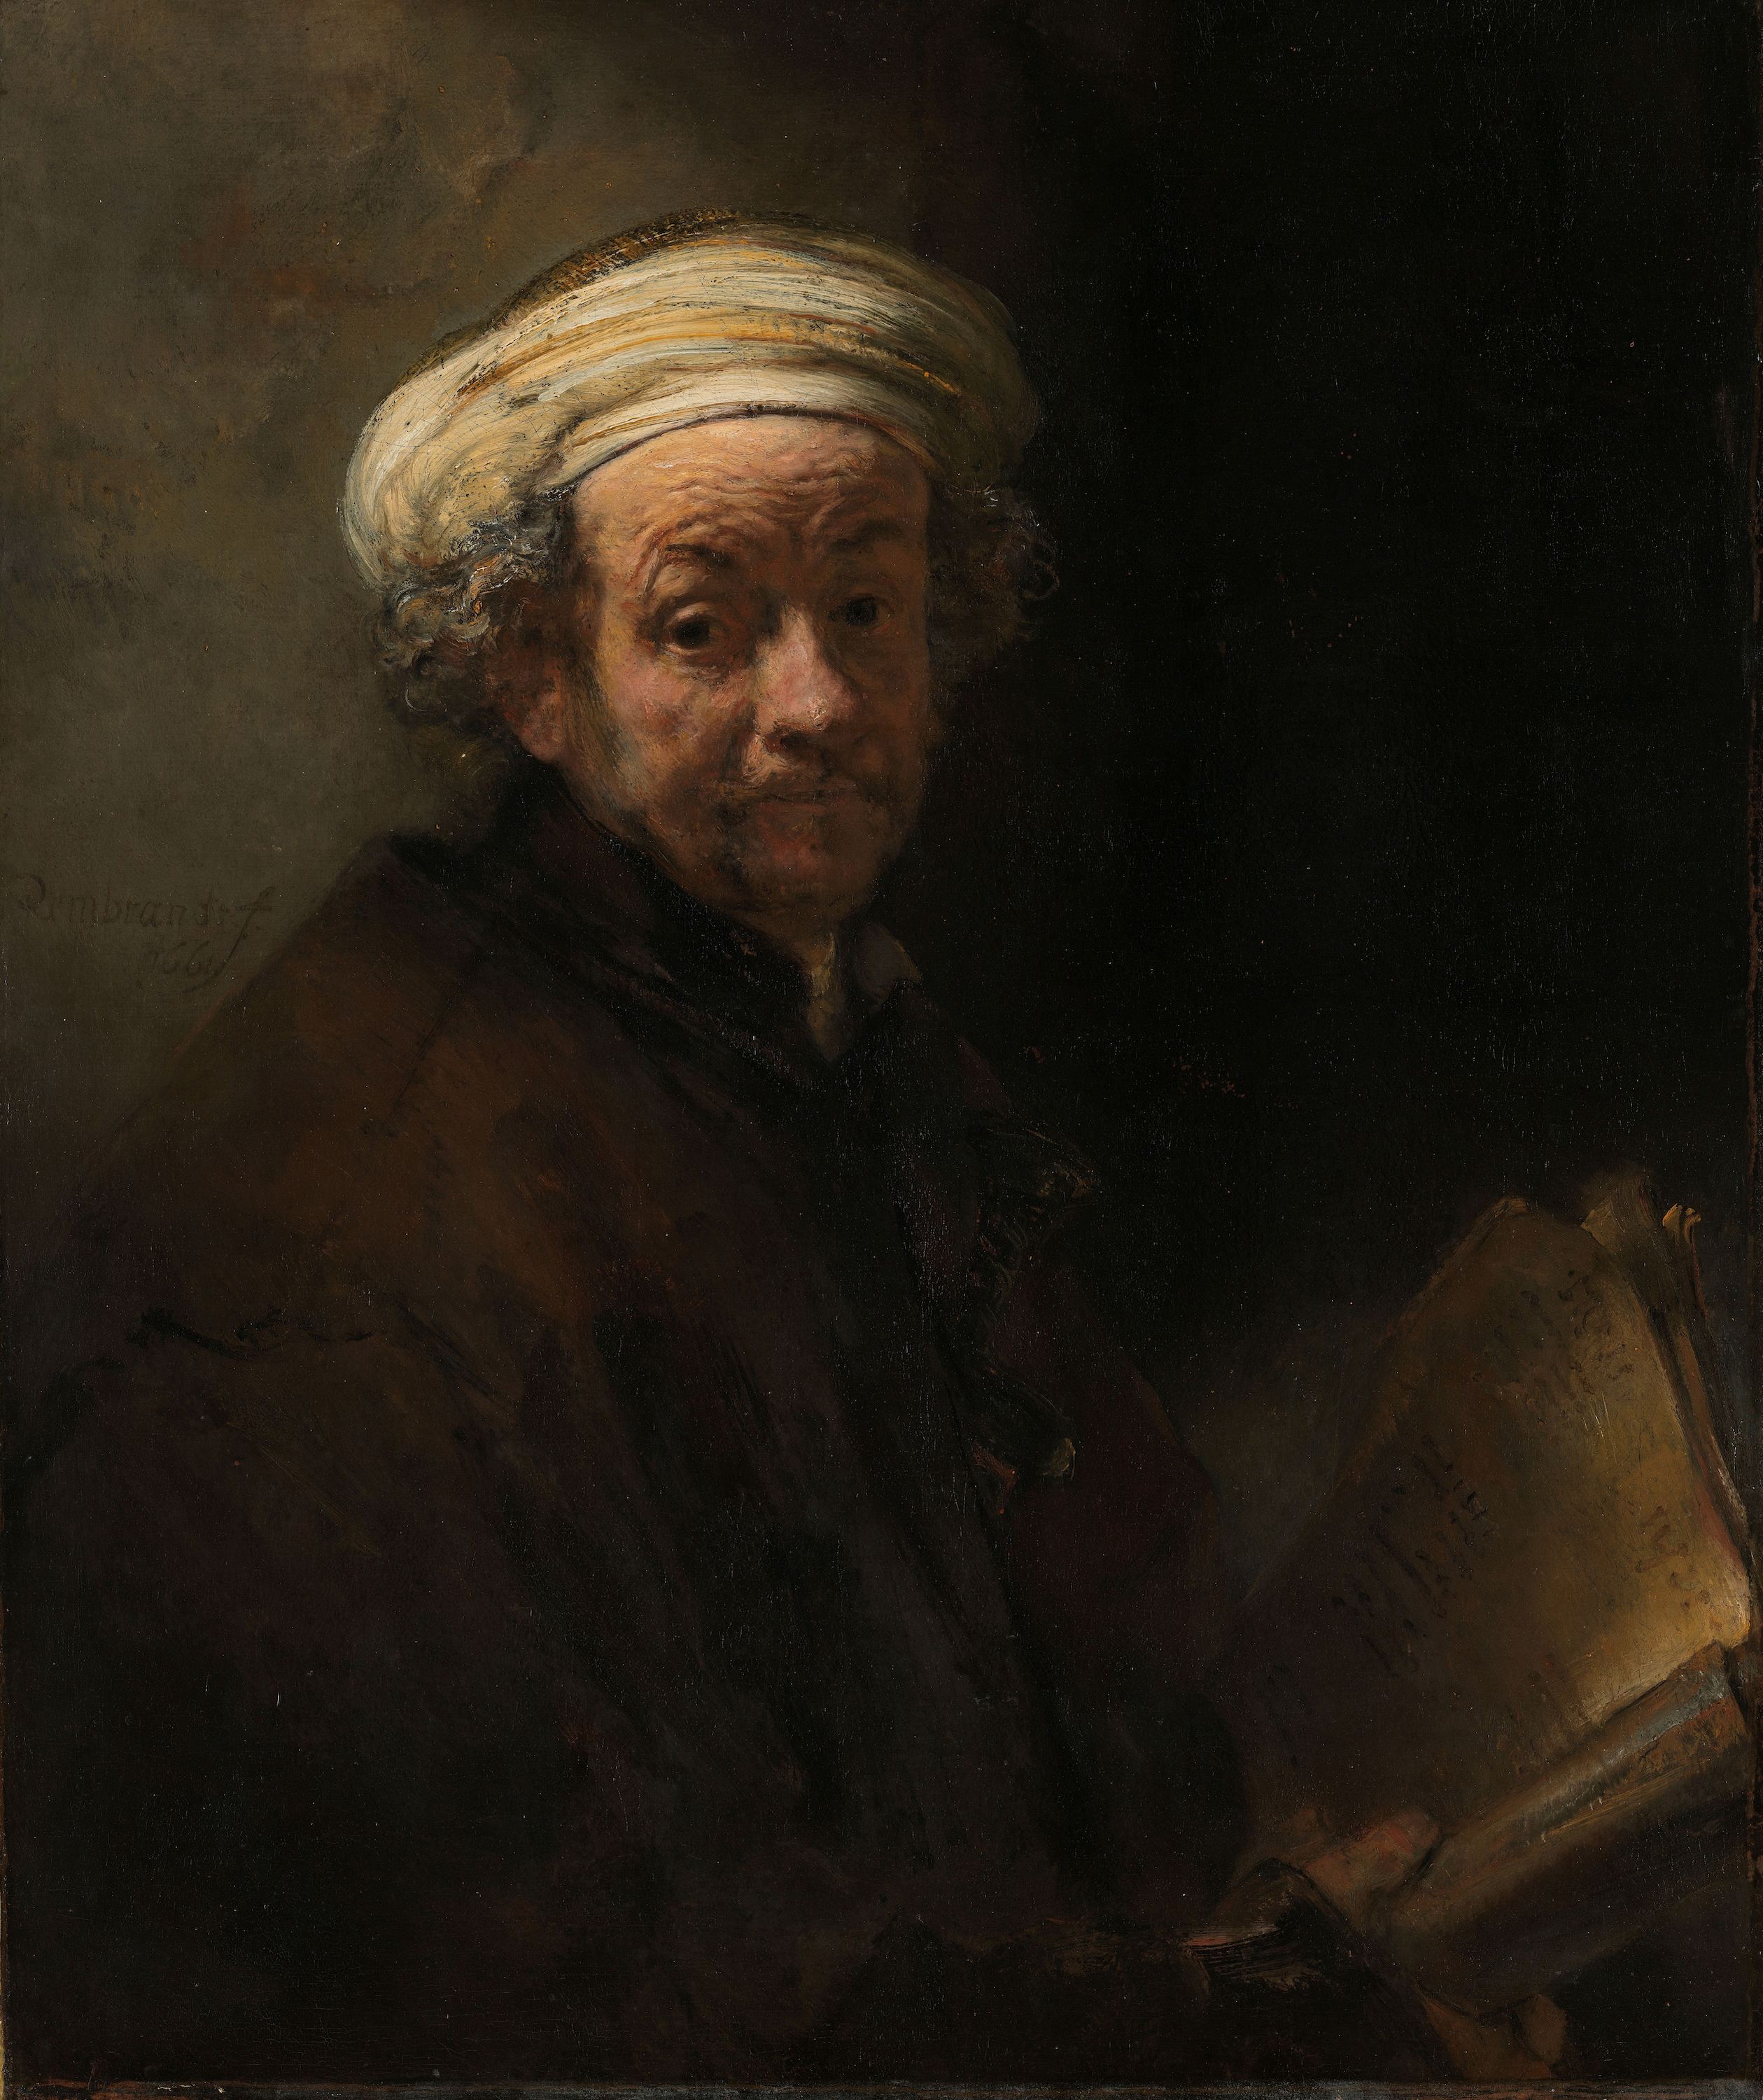 Self-portrait as the Apostle Paul by Rembrandt van Rijn - 1661 - 91 × 77 cm Rijksmuseum